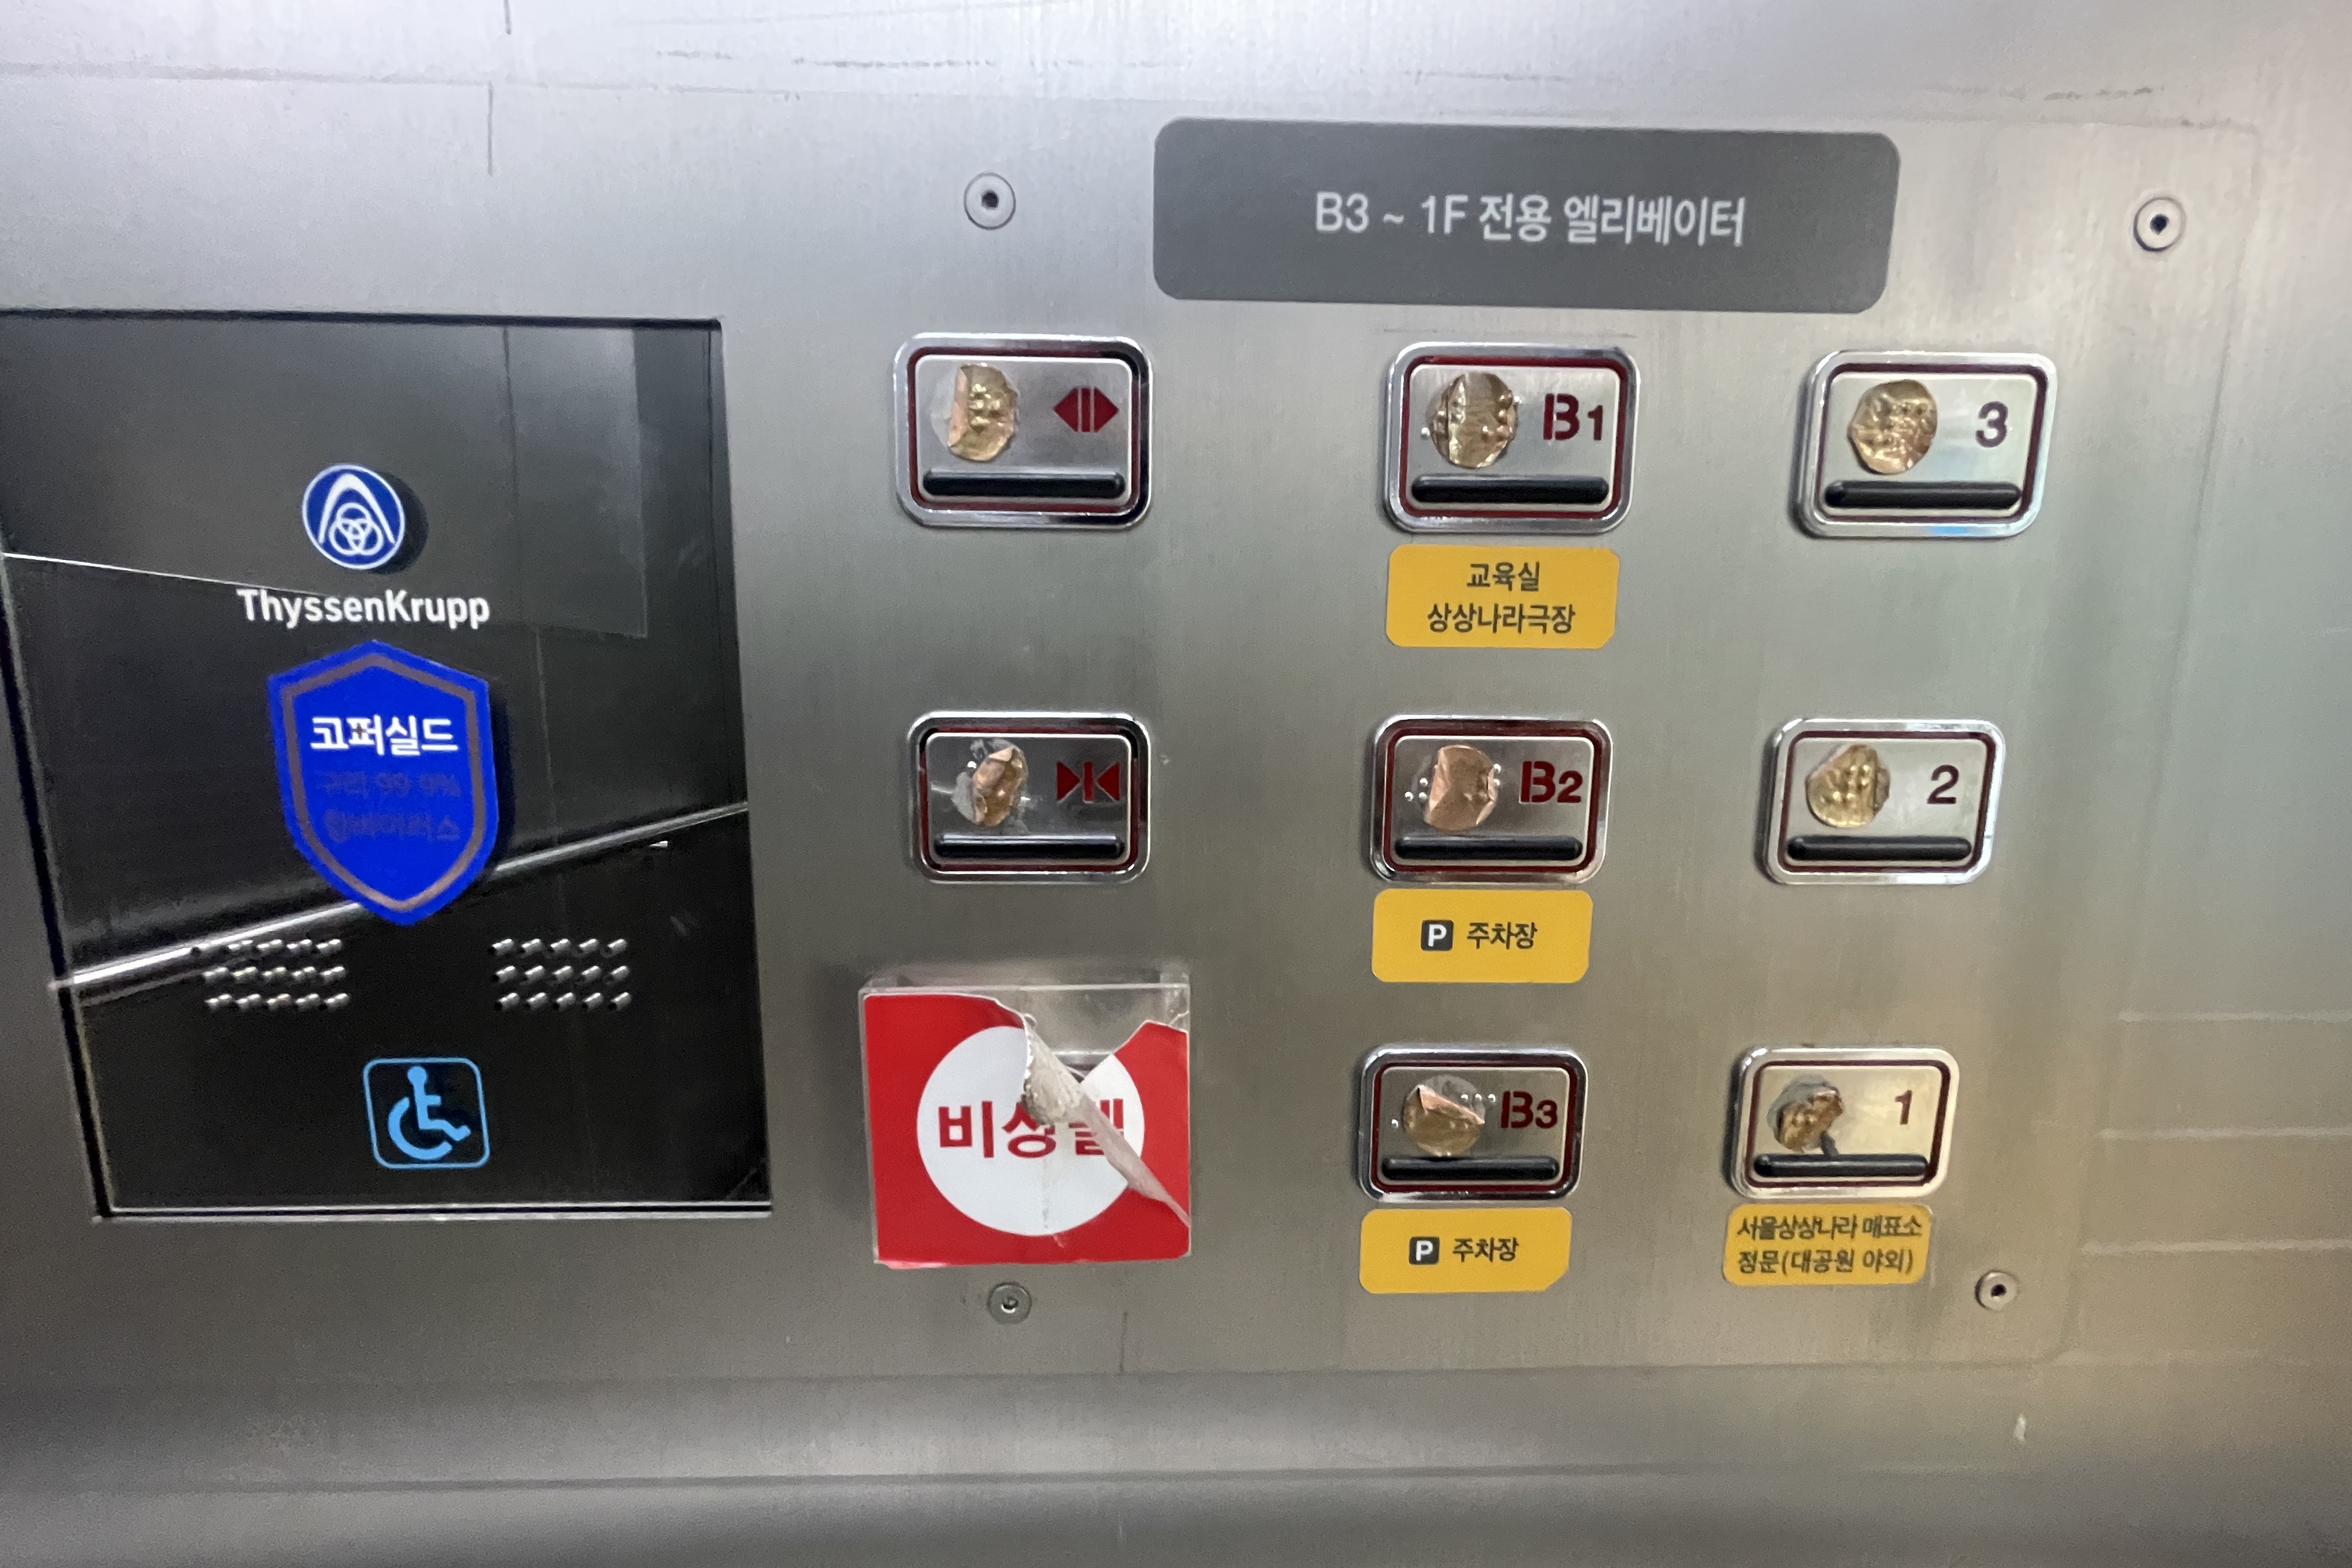 엘리베이터0 : 서울상상나라 엘리베이터에 설치된 호출 버튼 및 점자 버튼